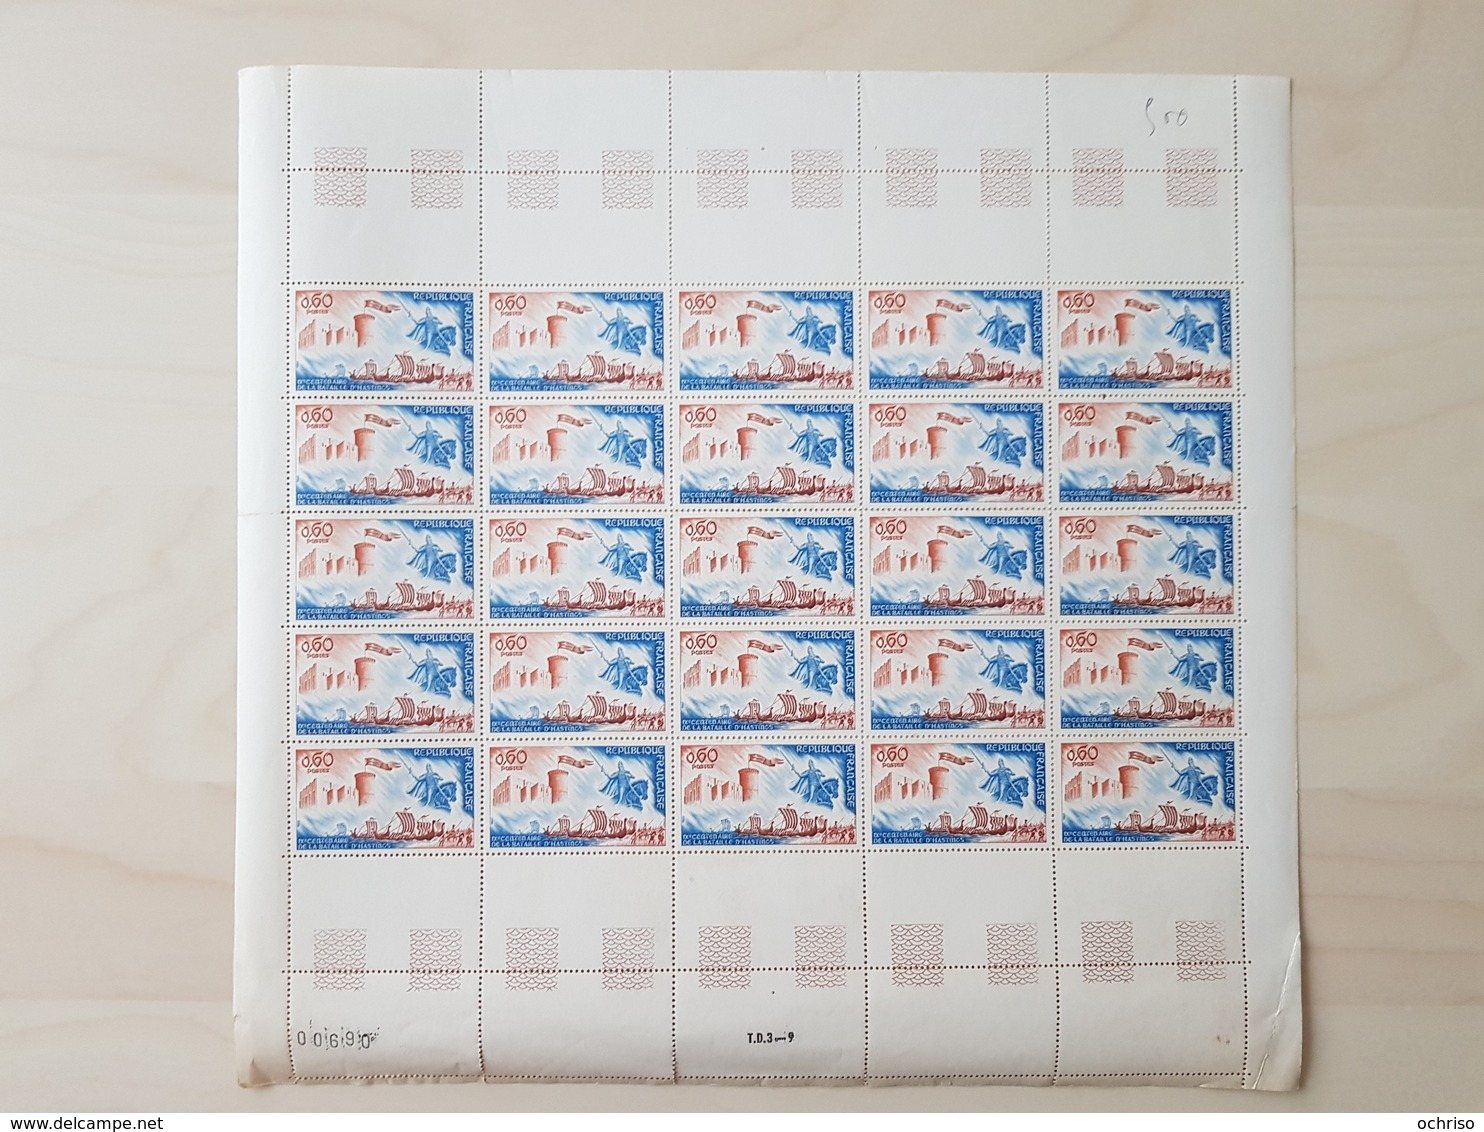 Affaire !!! Série de Feuilles completes et blocs de timbres France annnées 40-60 cote YT 700€